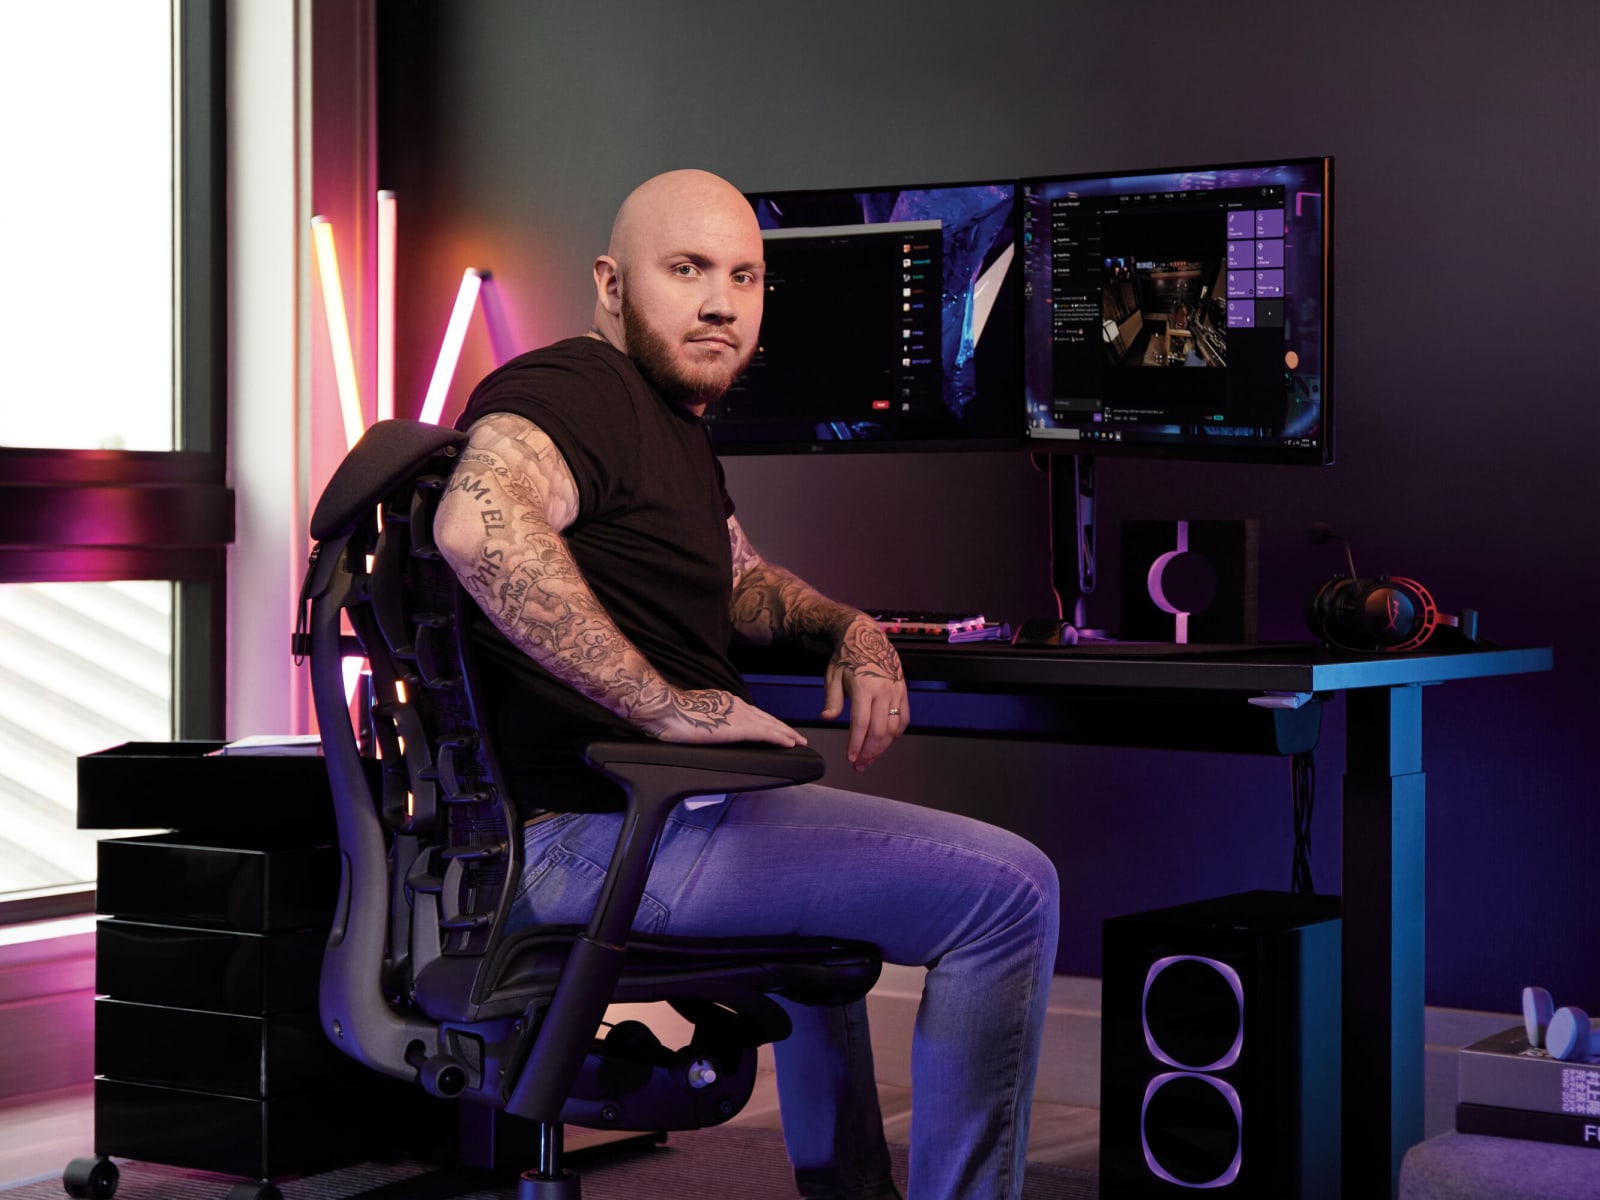 职业游戏主播Timthetatman坐在包括Embody电竞椅、Herman Miller坐姿-站姿切换两用办公桌和双显示器的游戏装备中间，暗黑系的装备闪耀着酷炫的光芒。